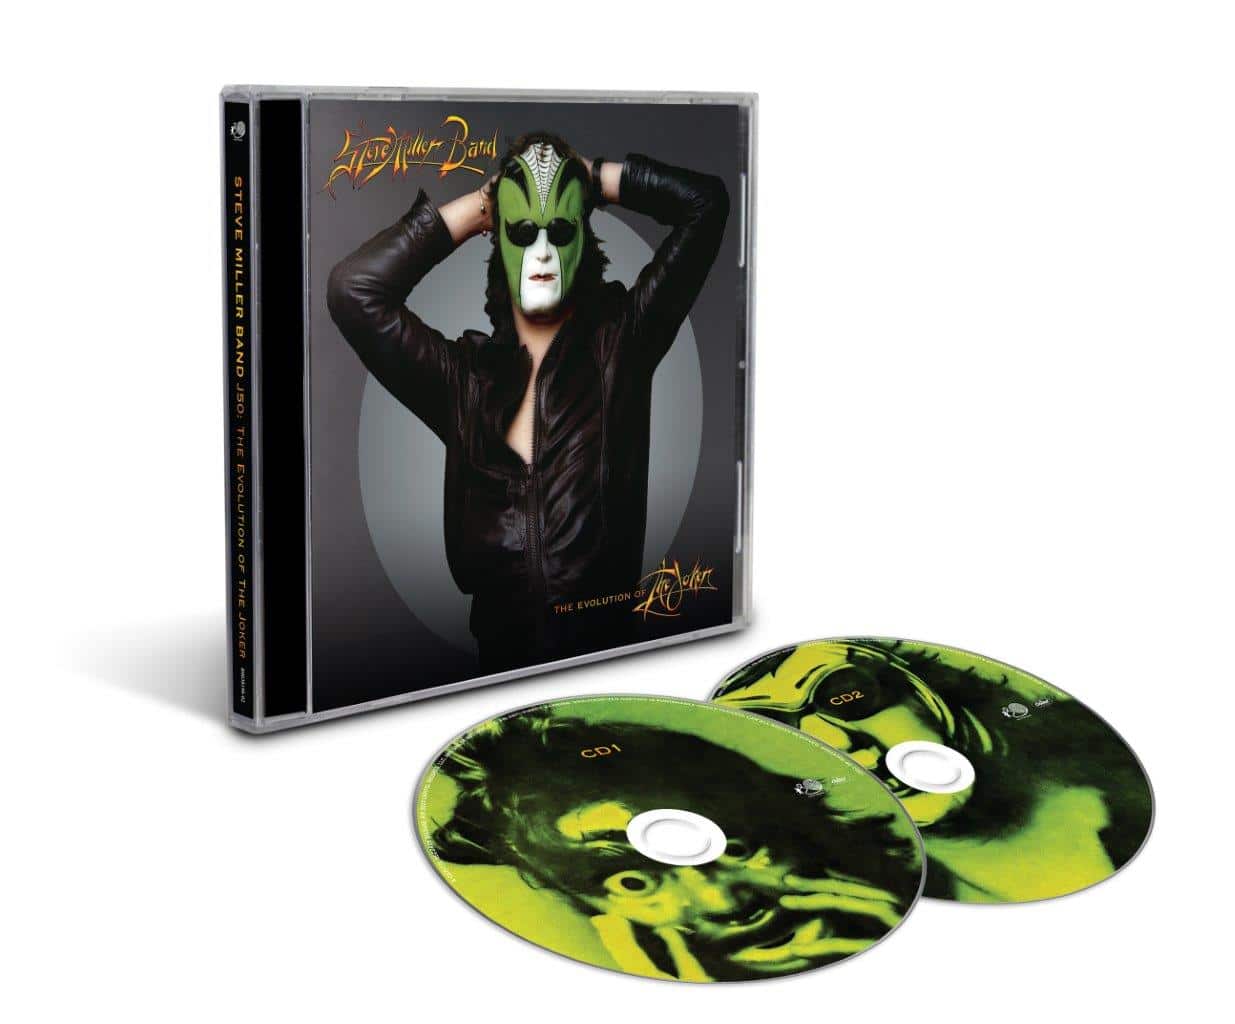 Steve Miller Band - J50: The Evolution of The Joker